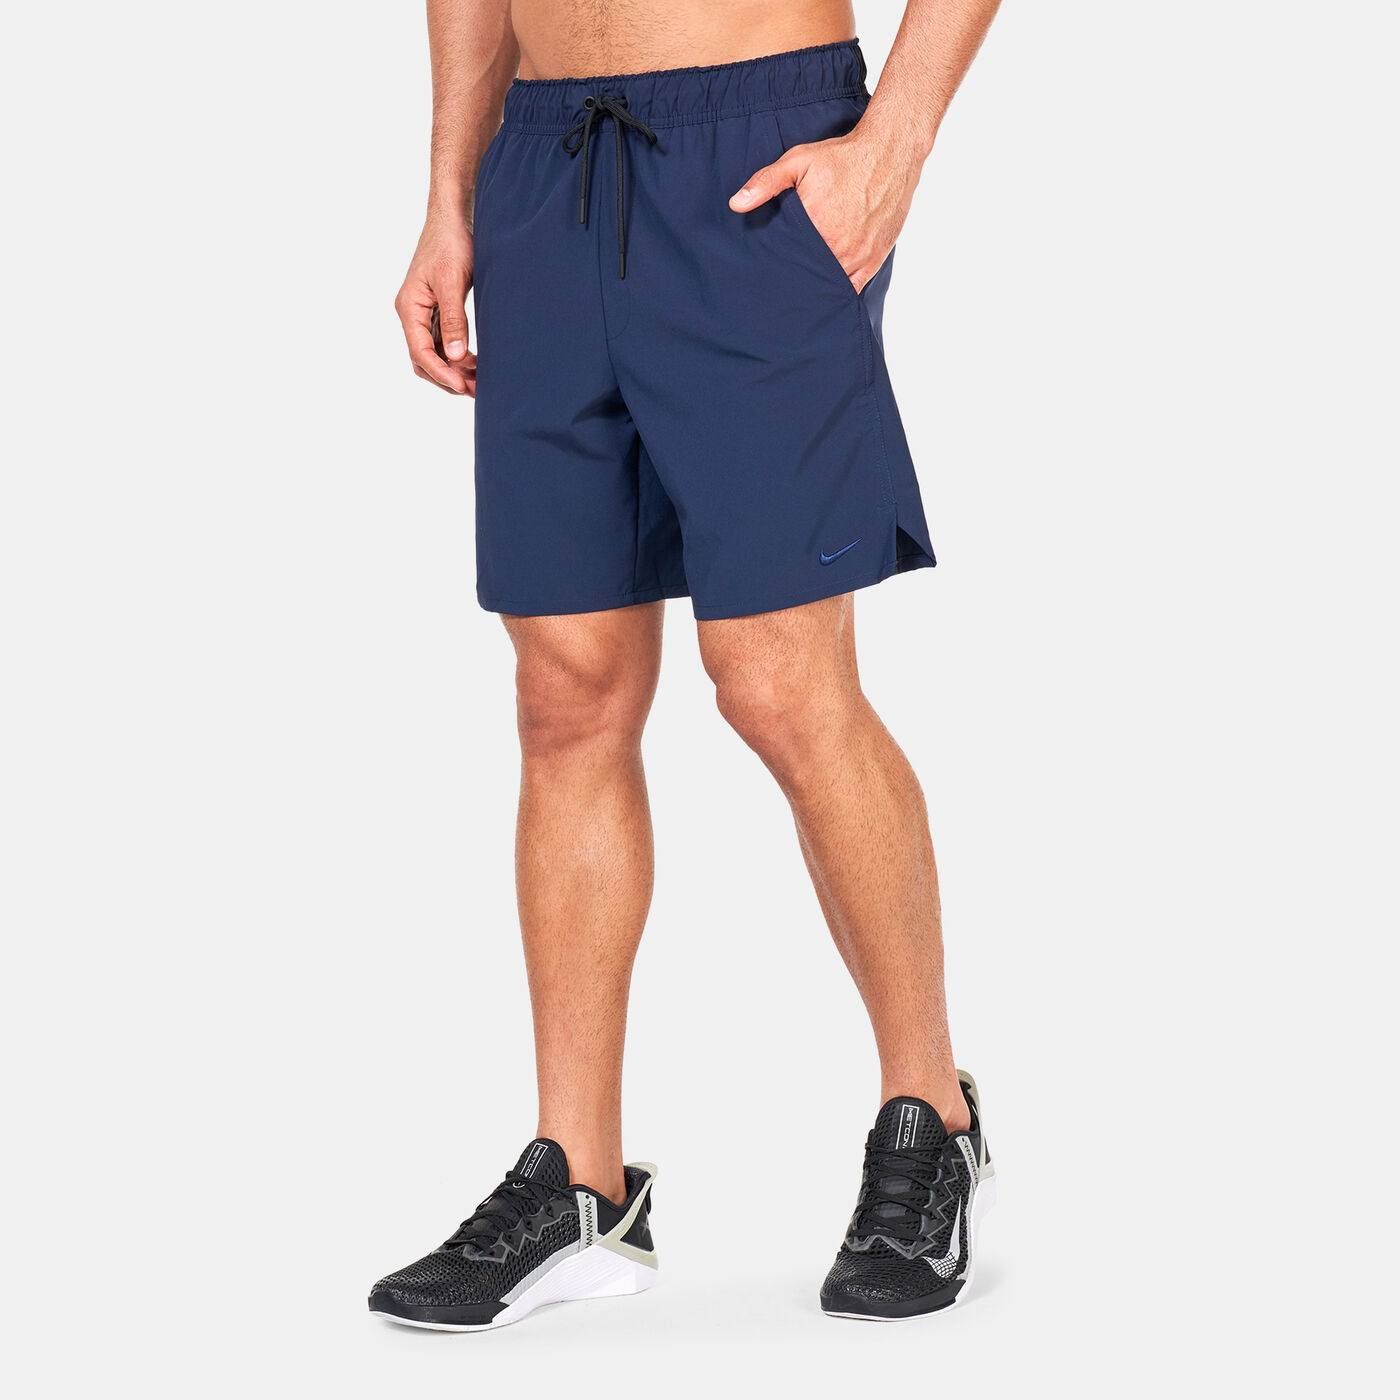 Men's Unlimited Dri-FIT Unlined Versatile Shorts